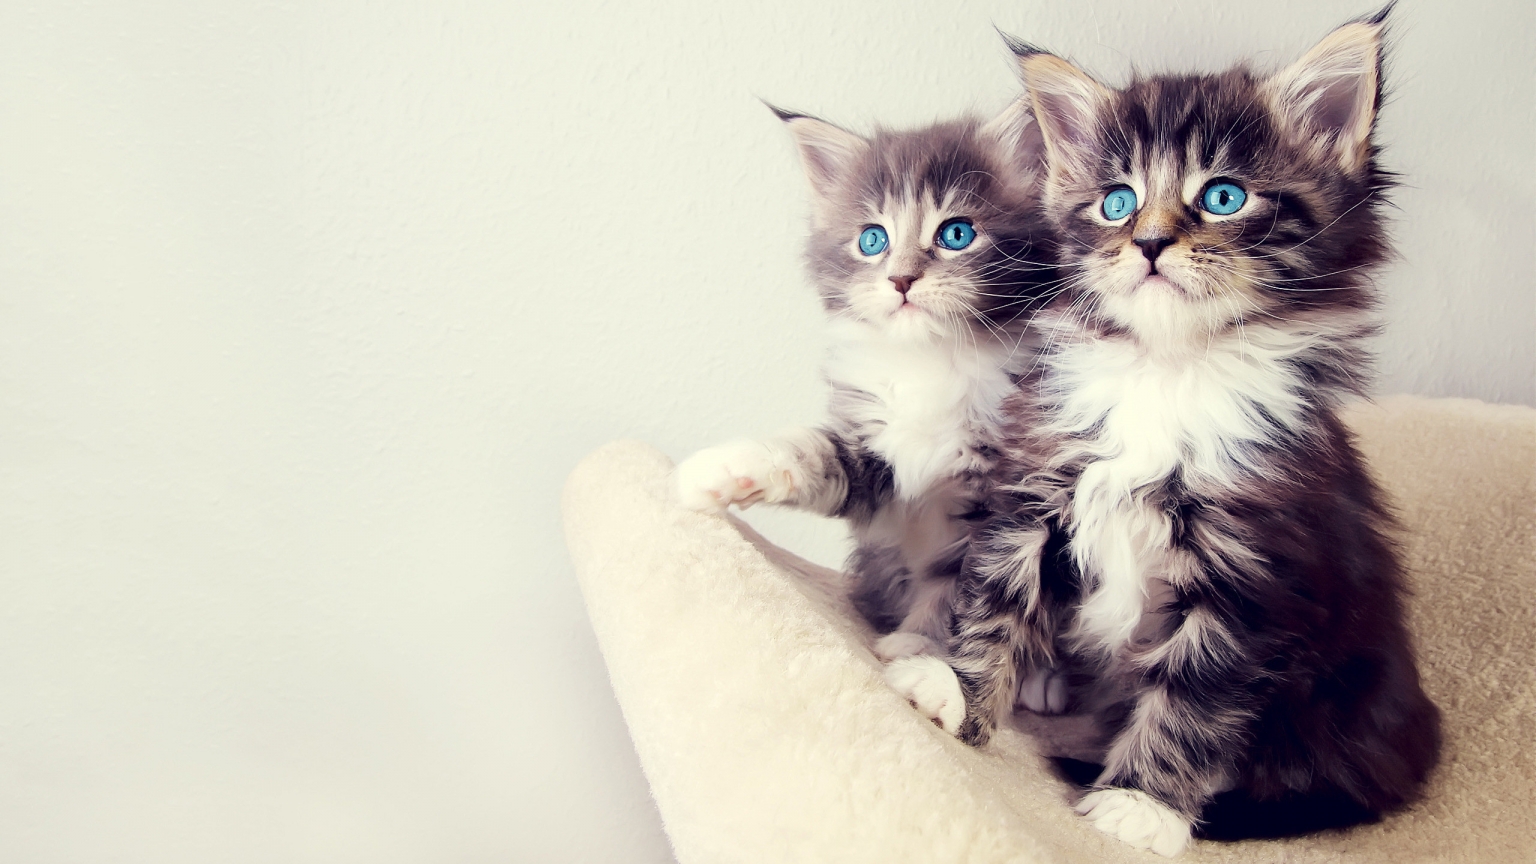 Gorgeous Kittens for 1536 x 864 HDTV resolution